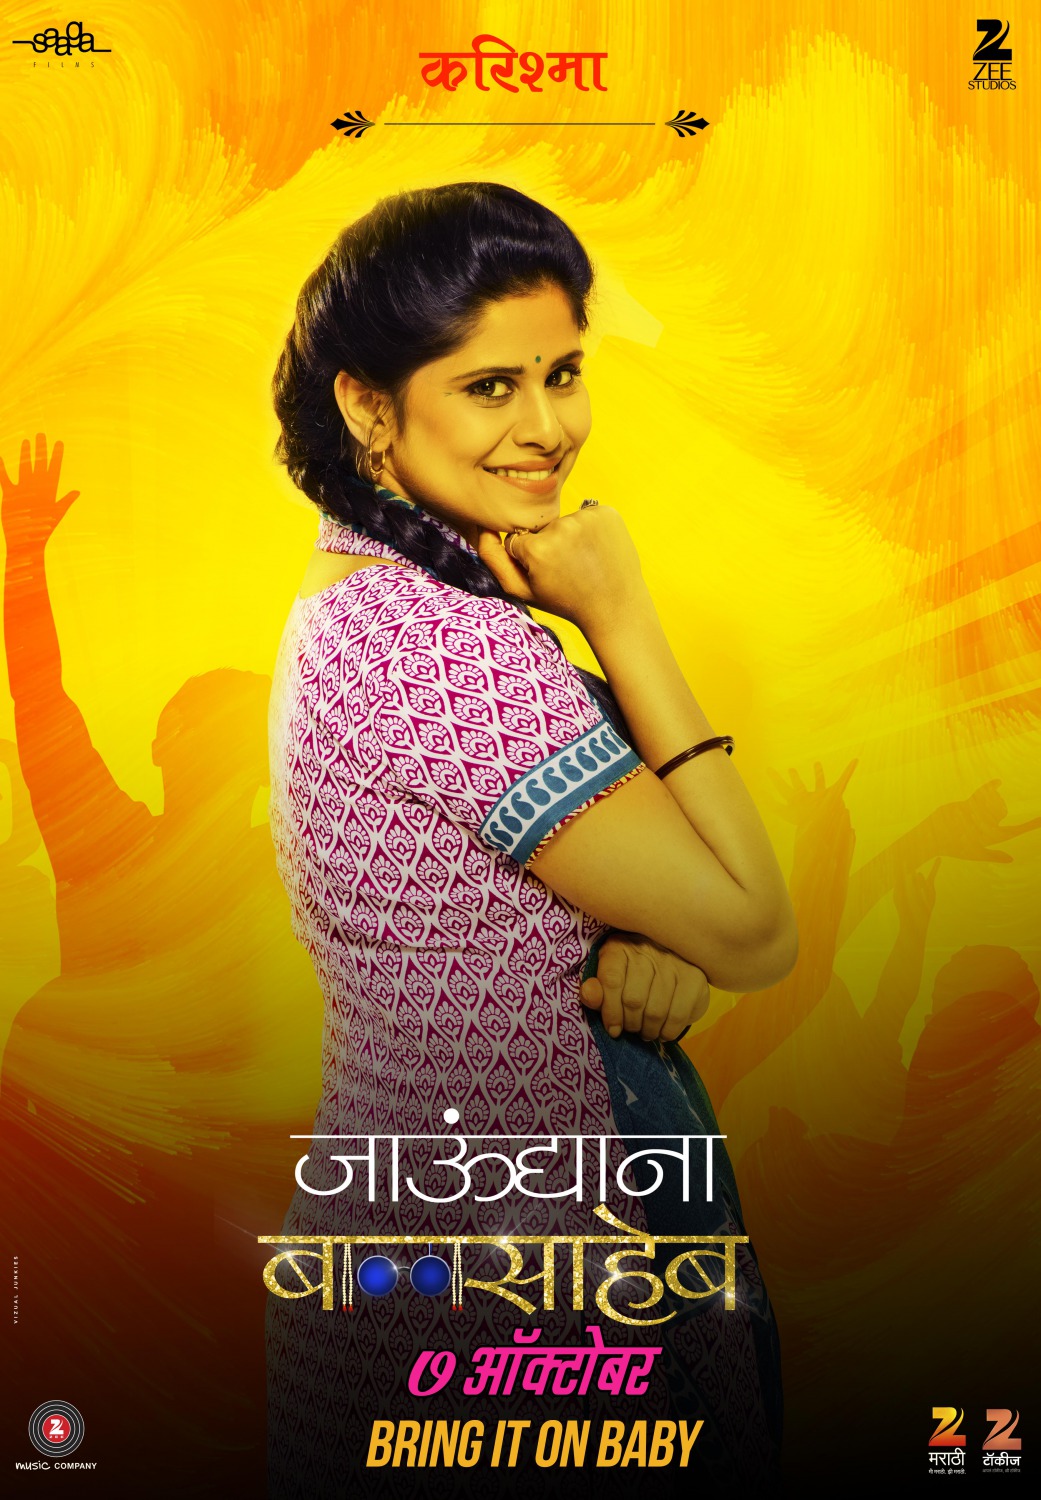 Extra Large Movie Poster Image for Jaundya Na Balasaheb (#4 of 9)